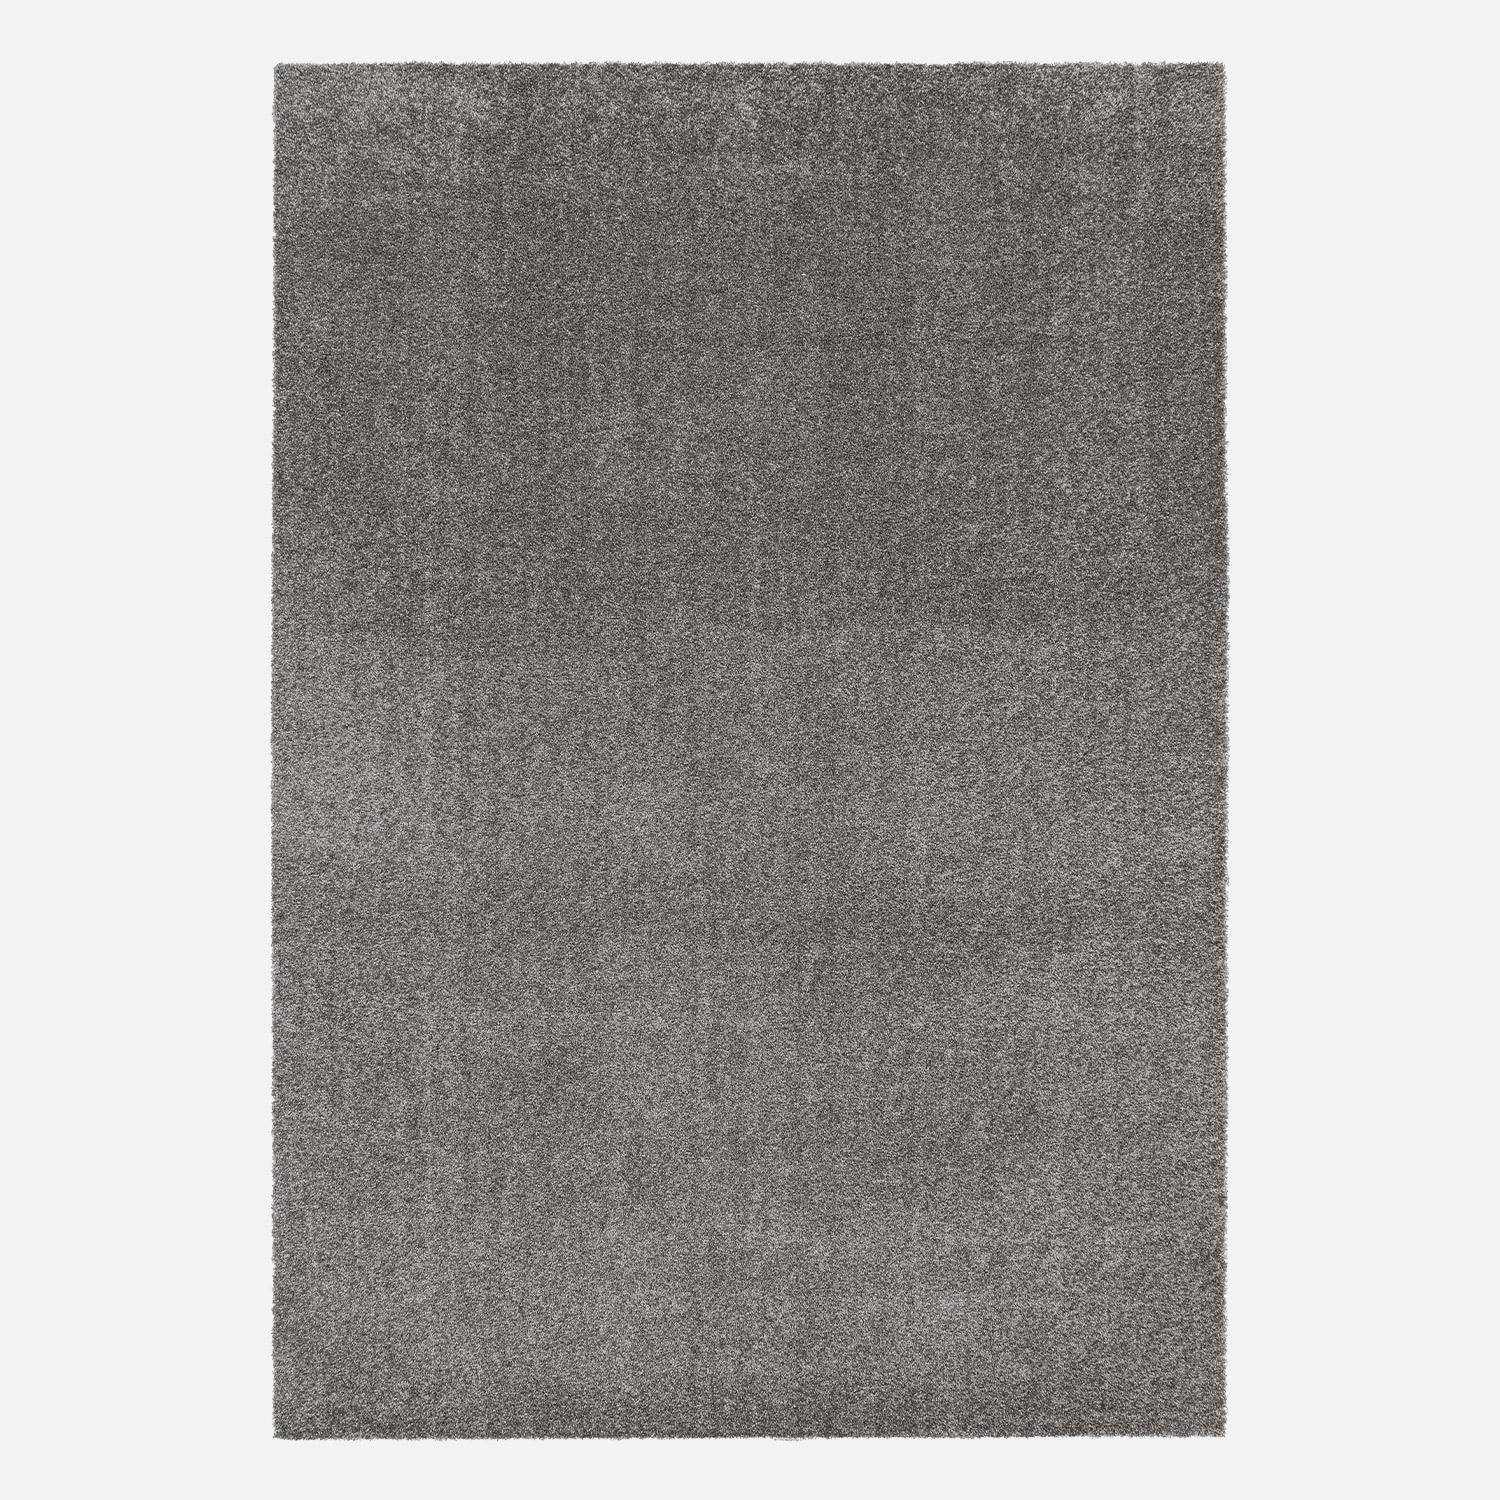 Tappeto per interni in velluto riccio grigio antracite, 160 x 230 cm, a pelo corto con effetto pelo ad anello,sweeek,Photo3